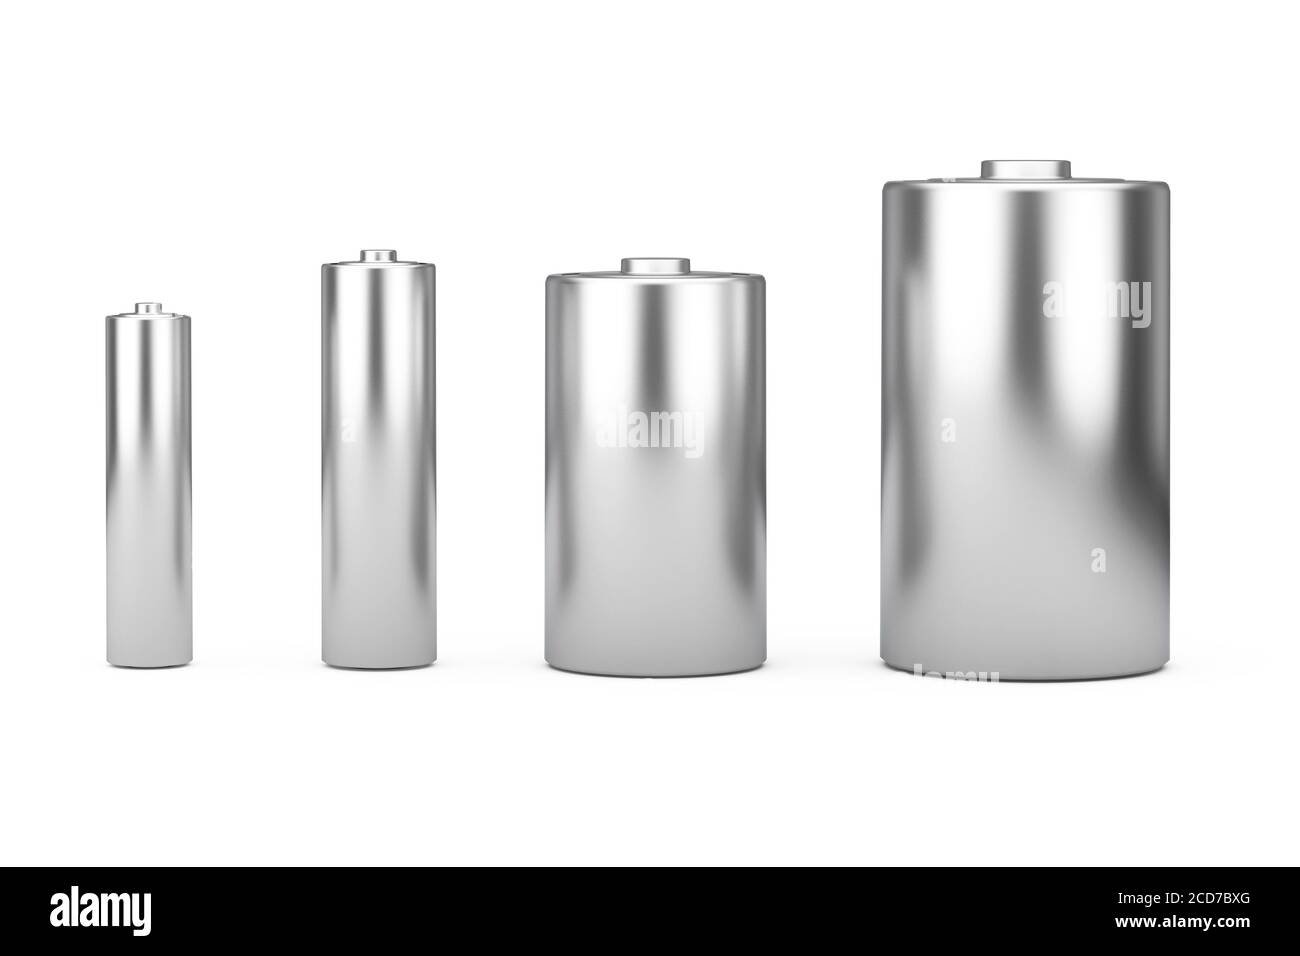 Jeu d'icônes de batterie alcalines avec différentes tailles AAA, AA, C, D et espace libre pour votre conception sur un fond blanc. Rendu 3d Banque D'Images